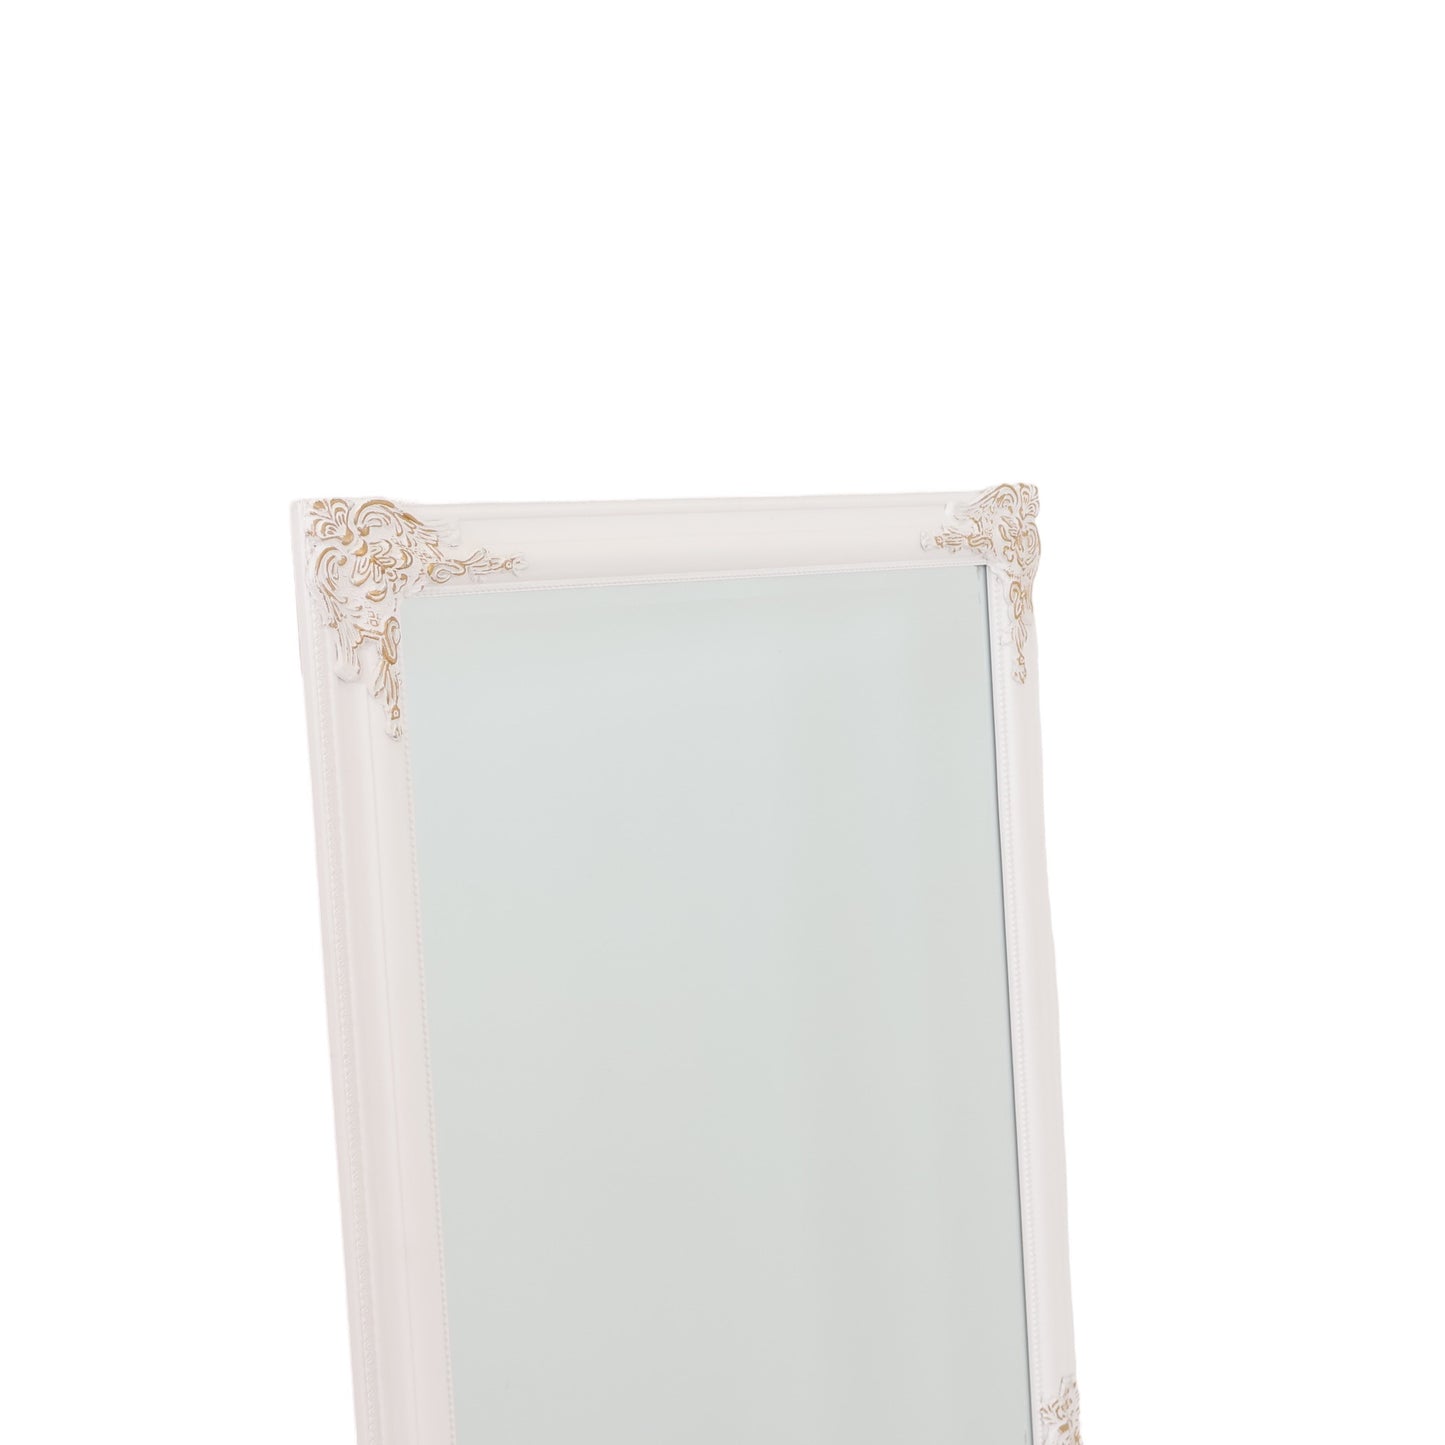 Kun brukt til utstilling | Nordborg speil i fargen hvit